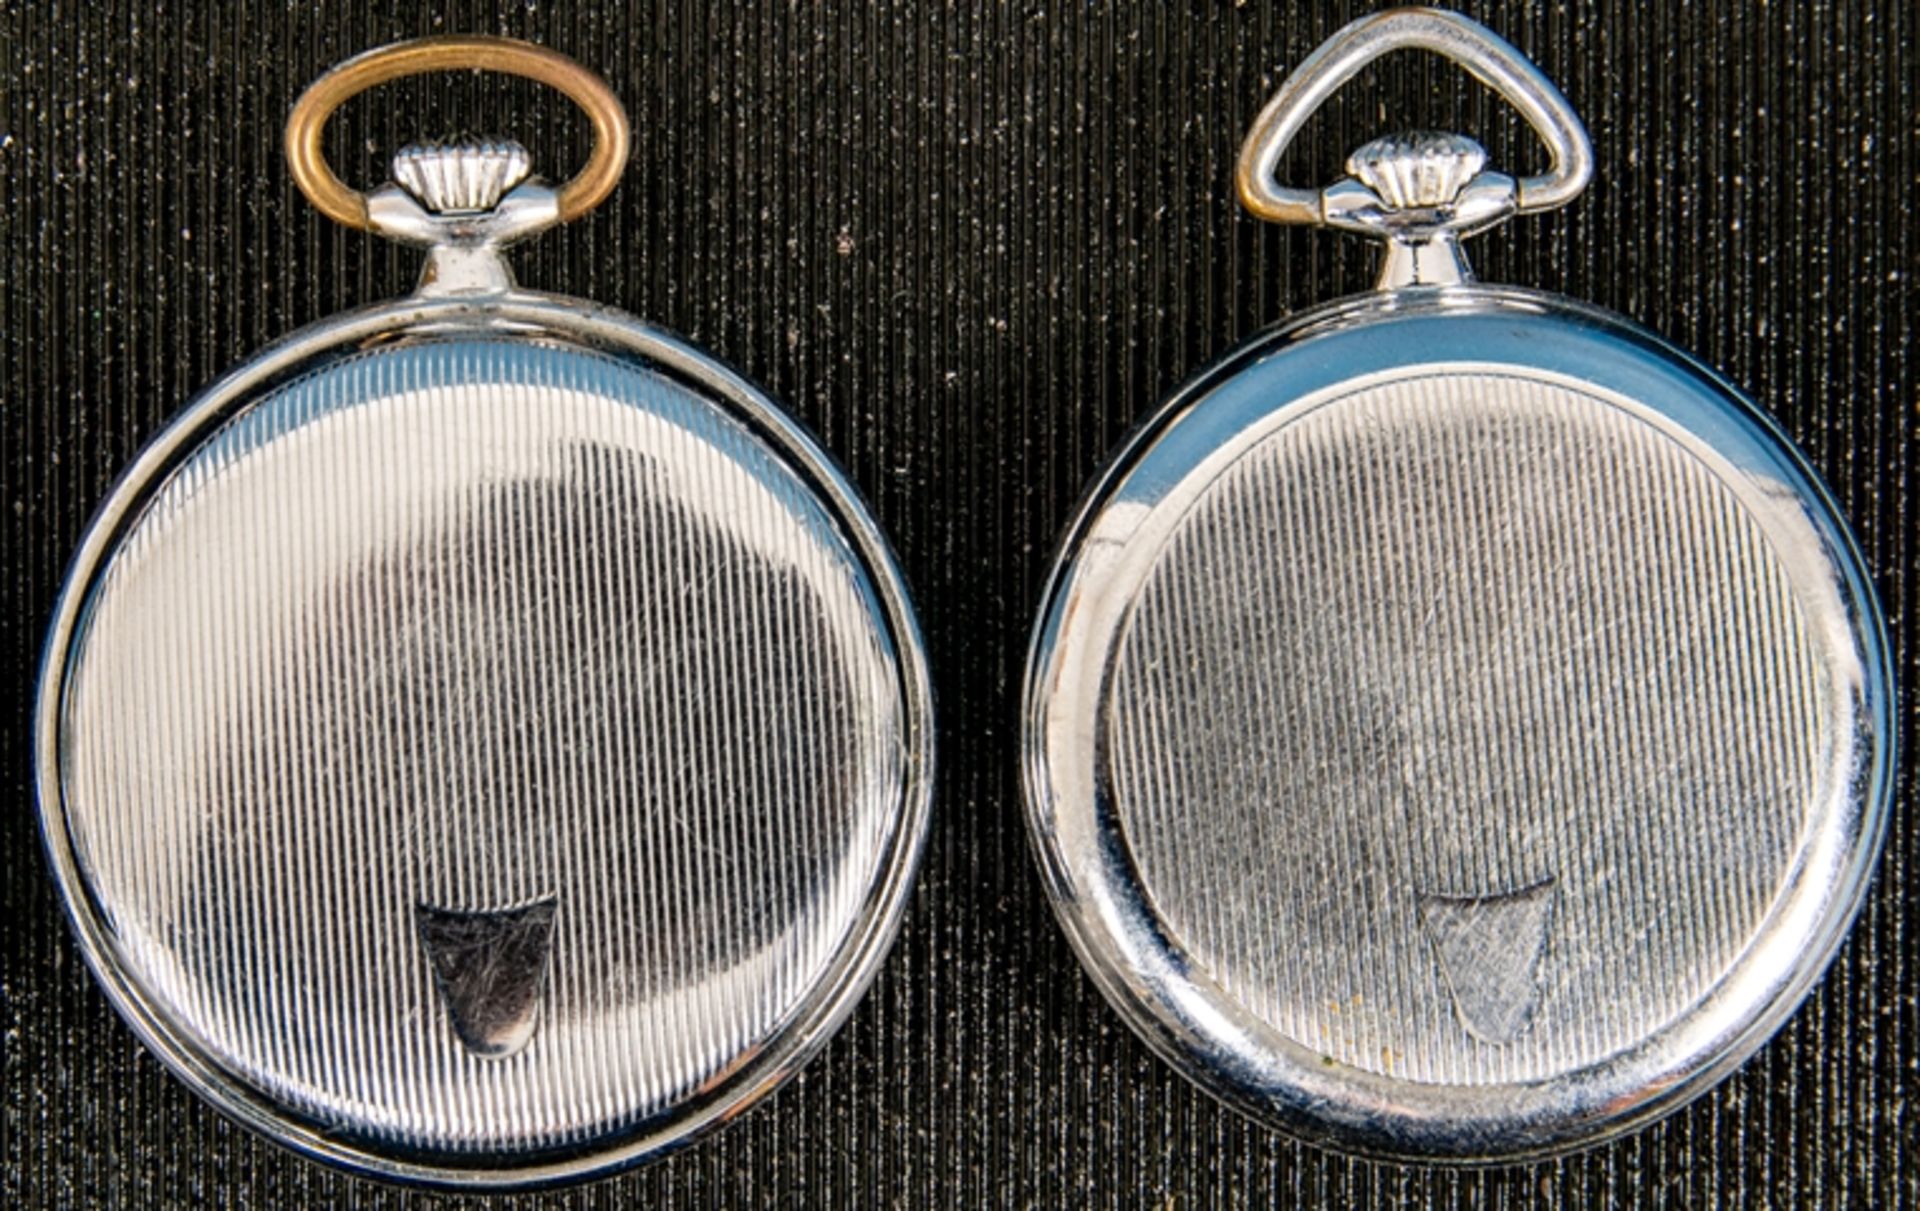 8teiliges Konvolut versch. offener Herrentaschenuhren, alle Gehäuse in Silber; versch. Alter, Größe - Bild 10 aus 13